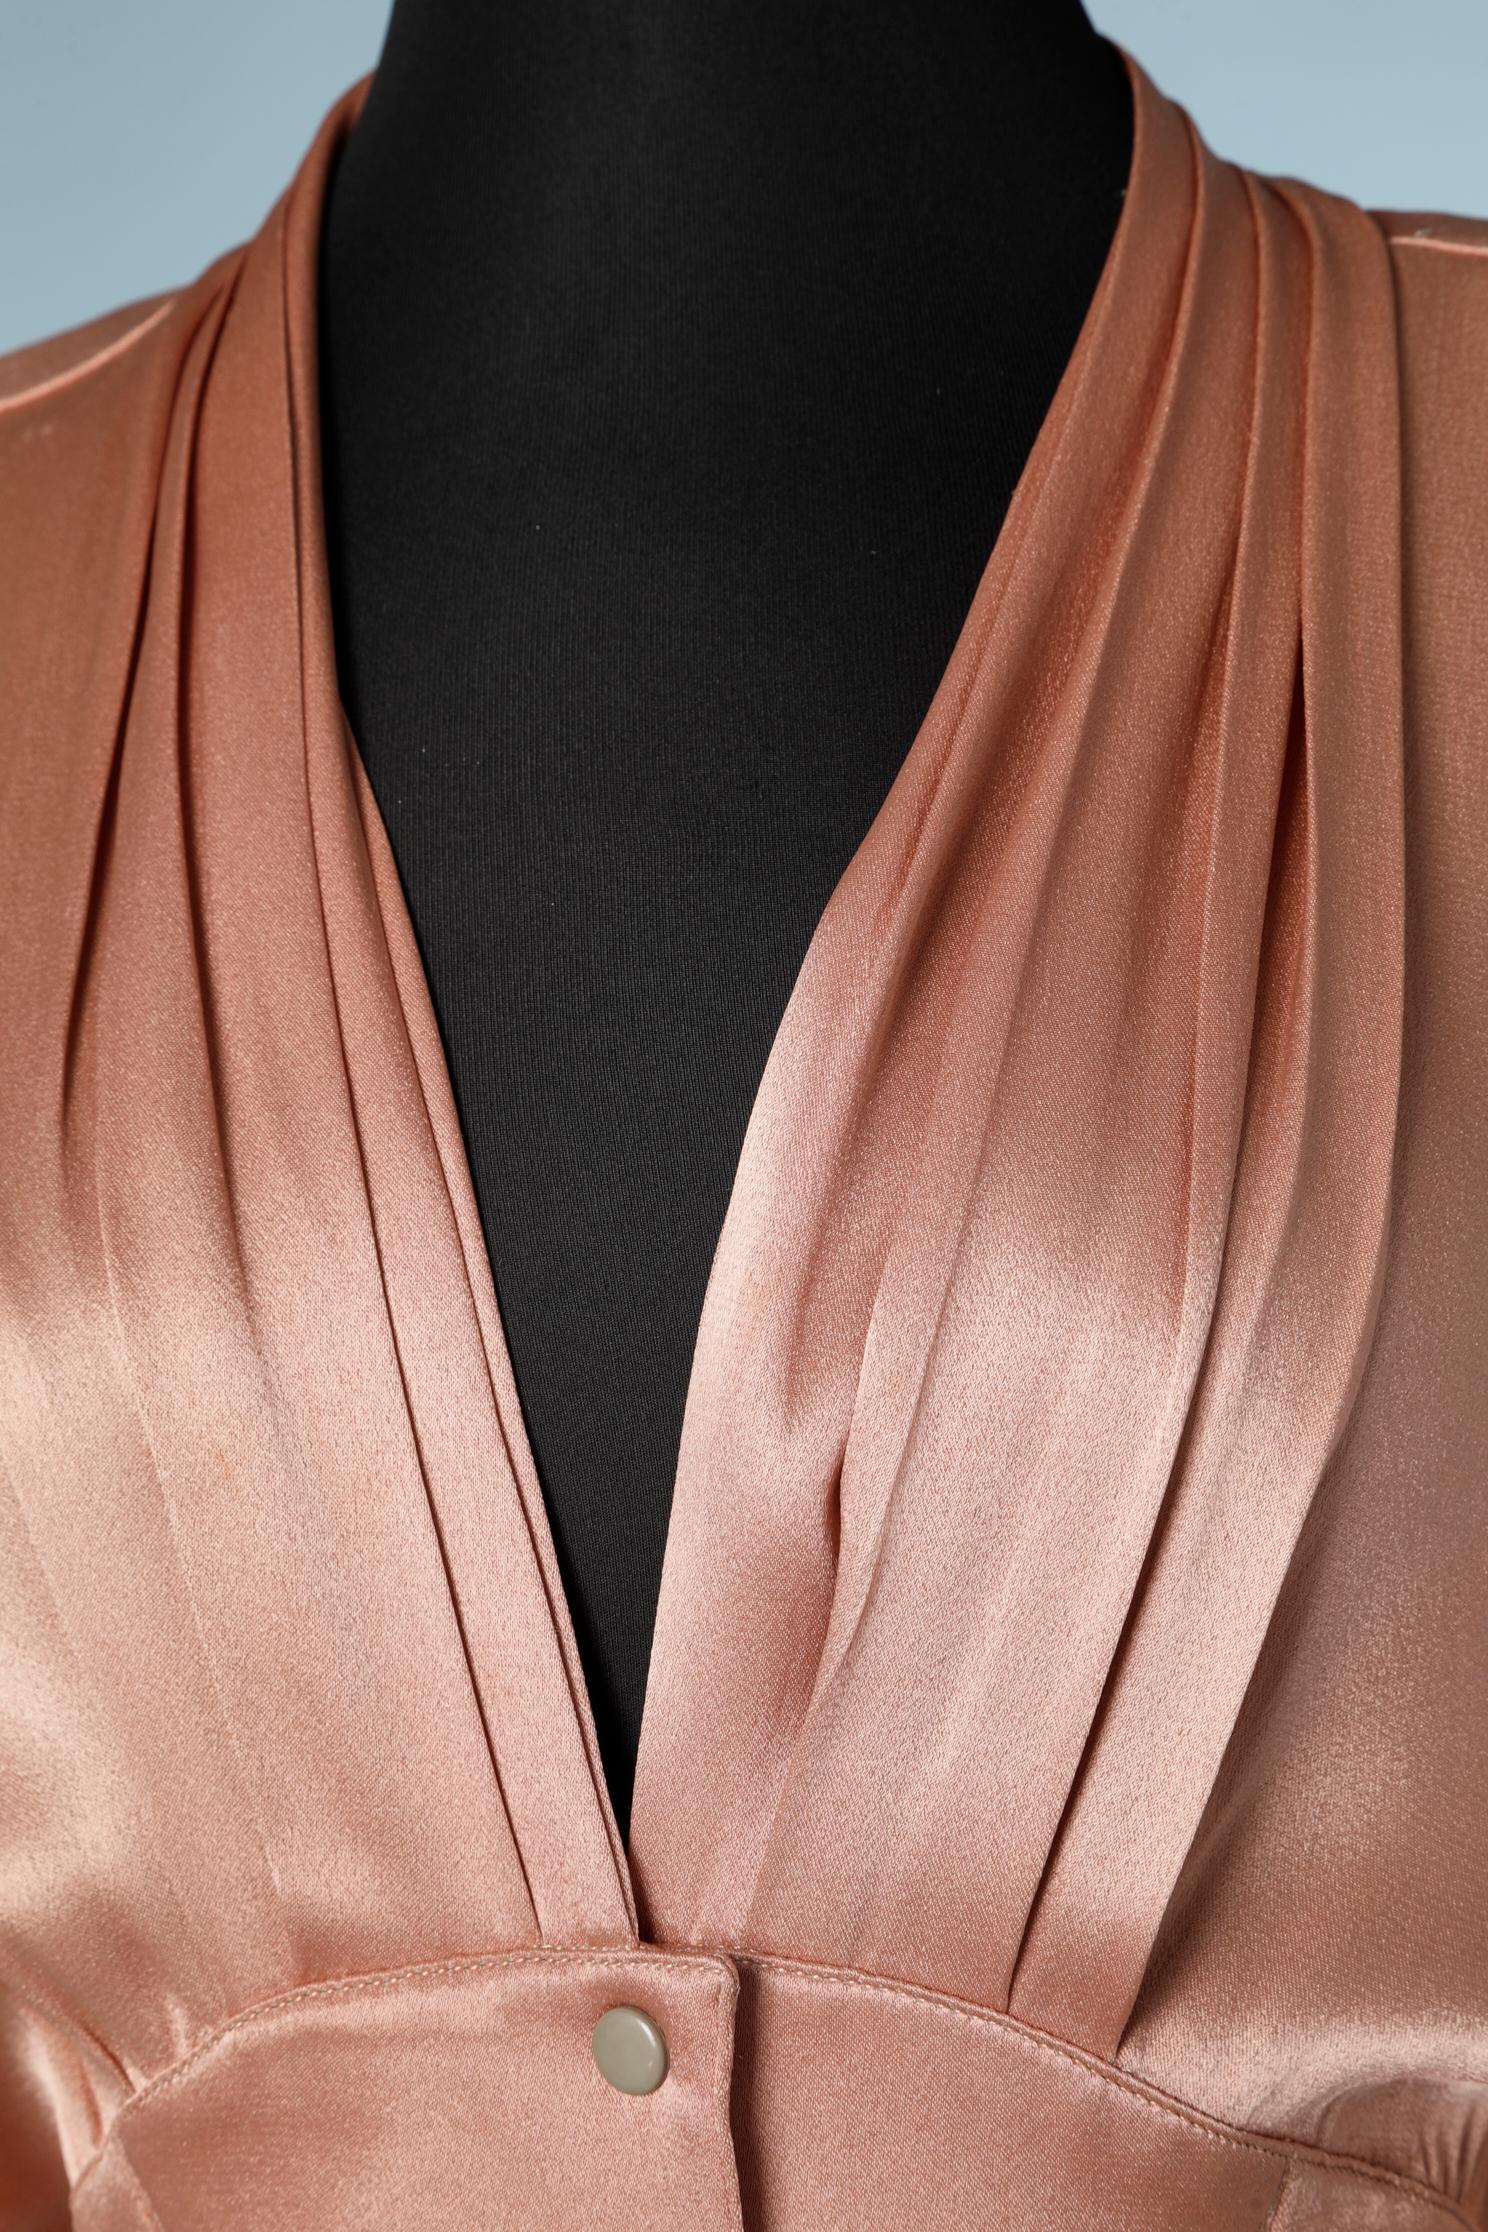 Pale pink rayon dress.
SIZE 38/40 (Fr) 